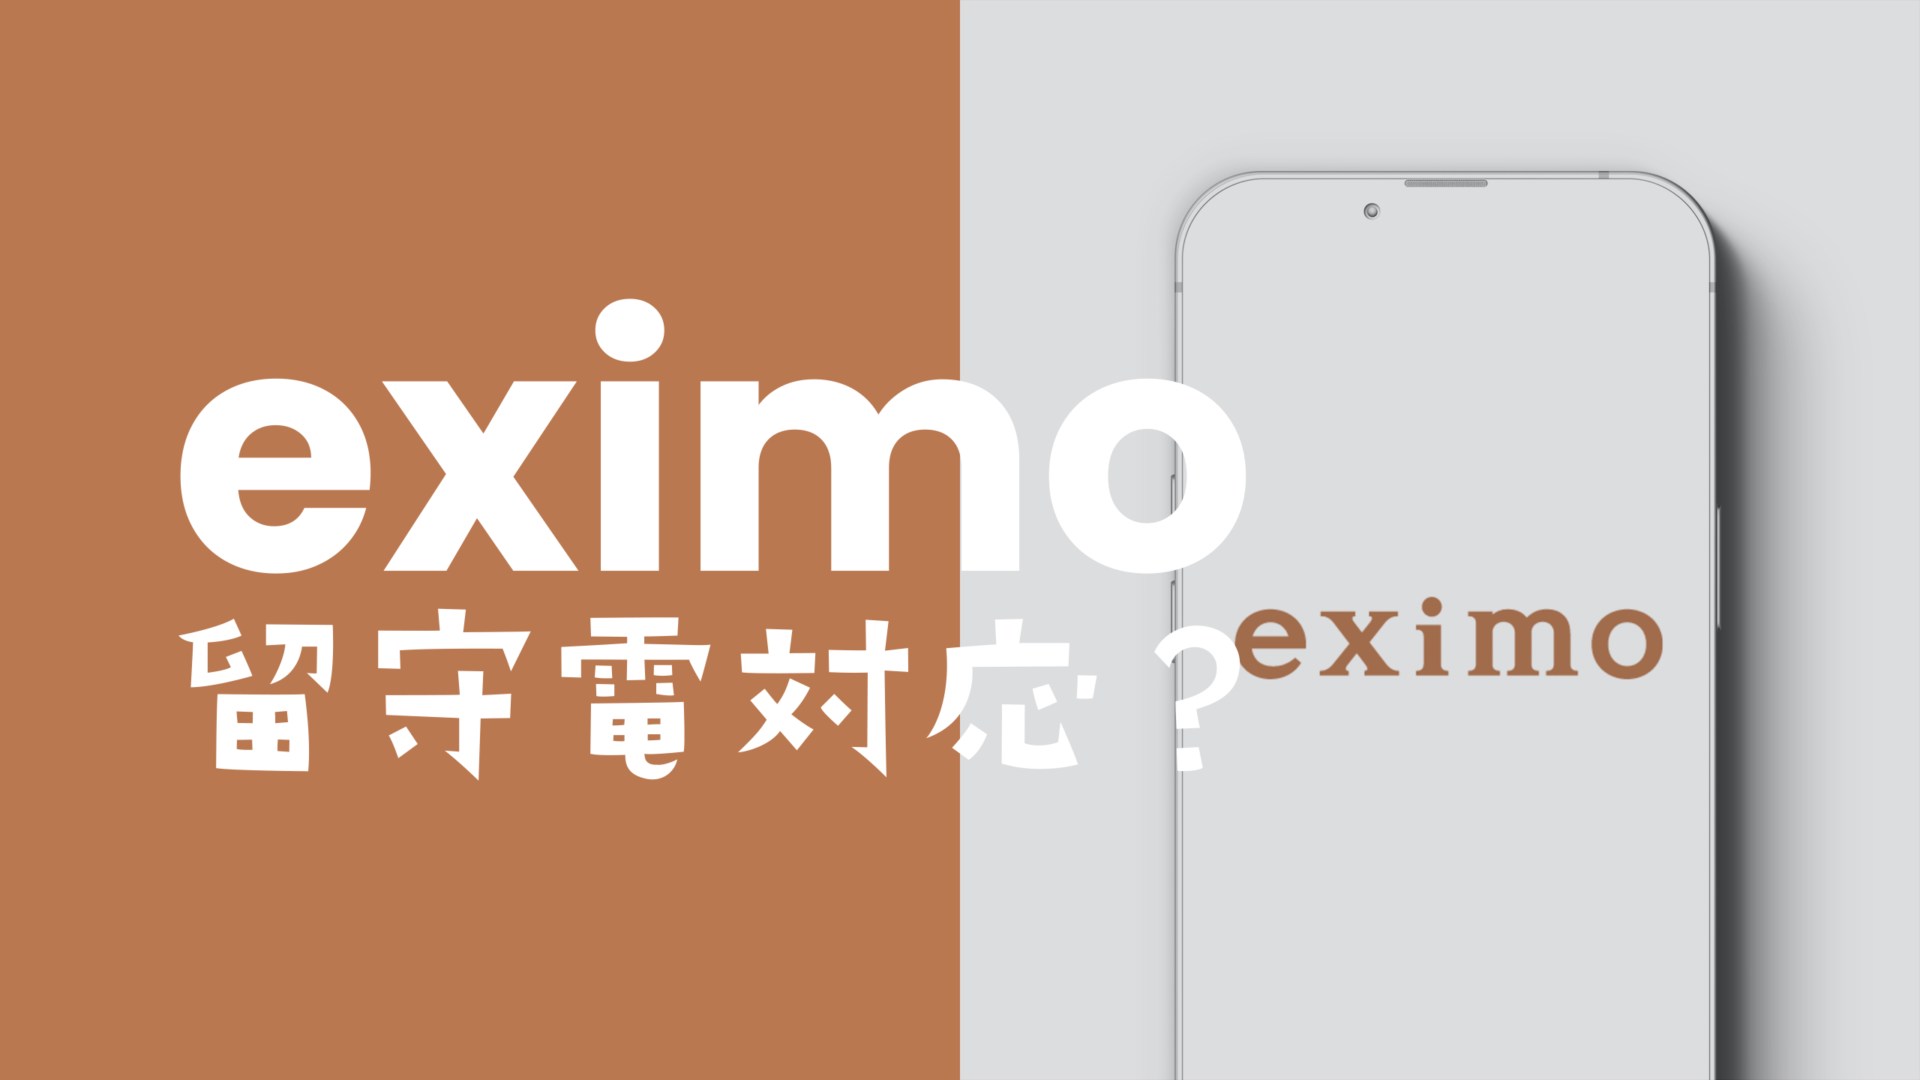 eximo(エクシモ)で留守電(留守番電話)が使える&対応、オプションは必要か解説のサムネイル画像